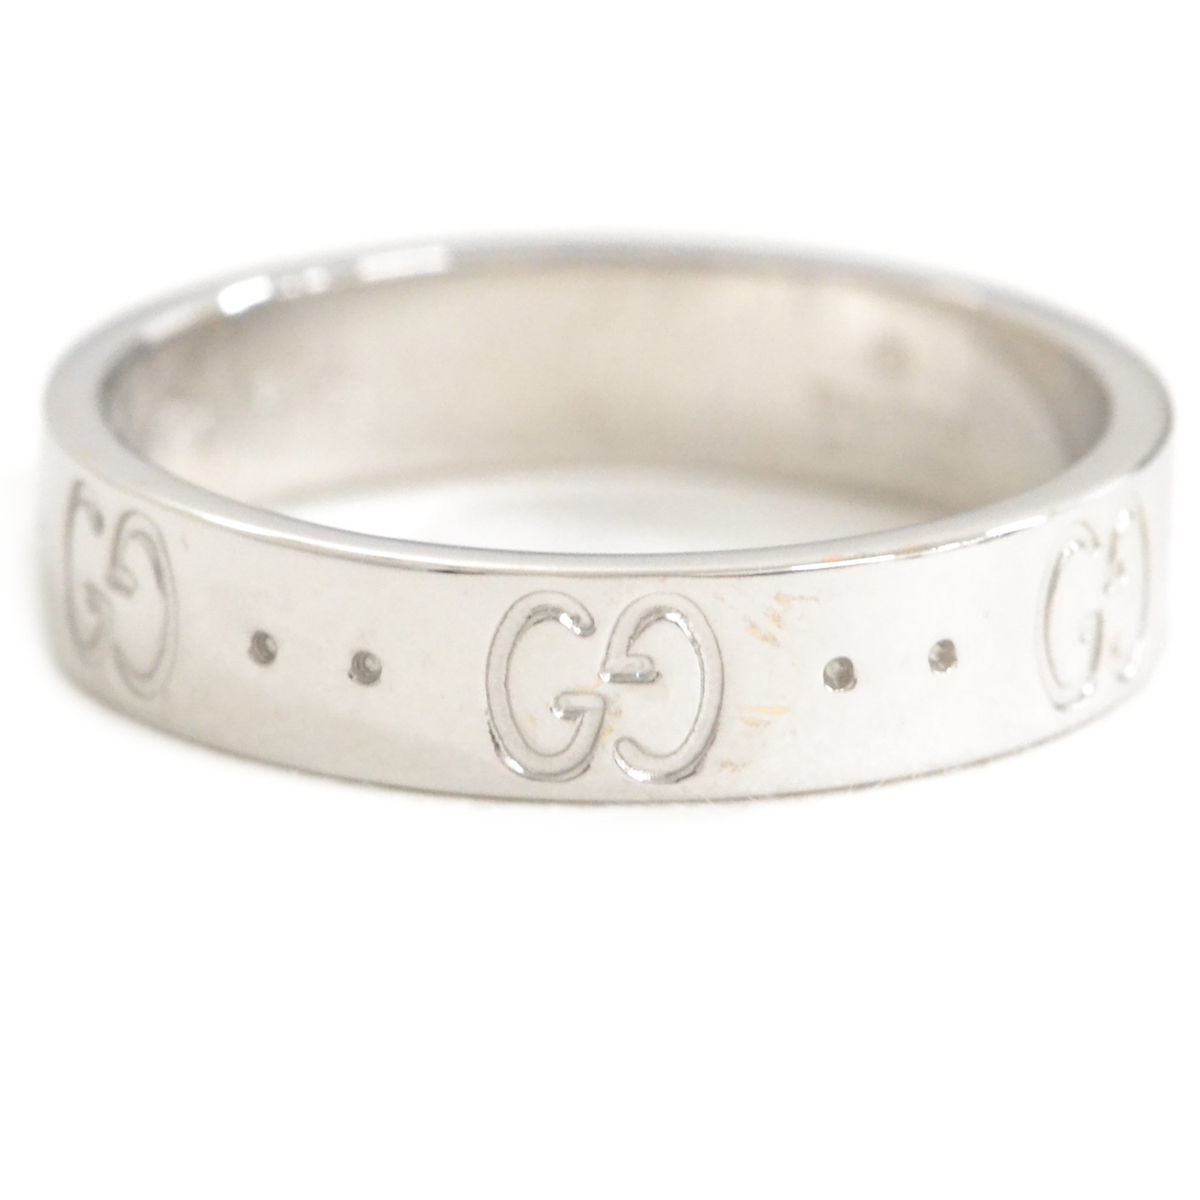 【特別セール品】 リング WG 750 アイコンリング GG GUCCI グッチ 本物 指輪 ホワイトゴールド 11号 11 ホワイトゴールド